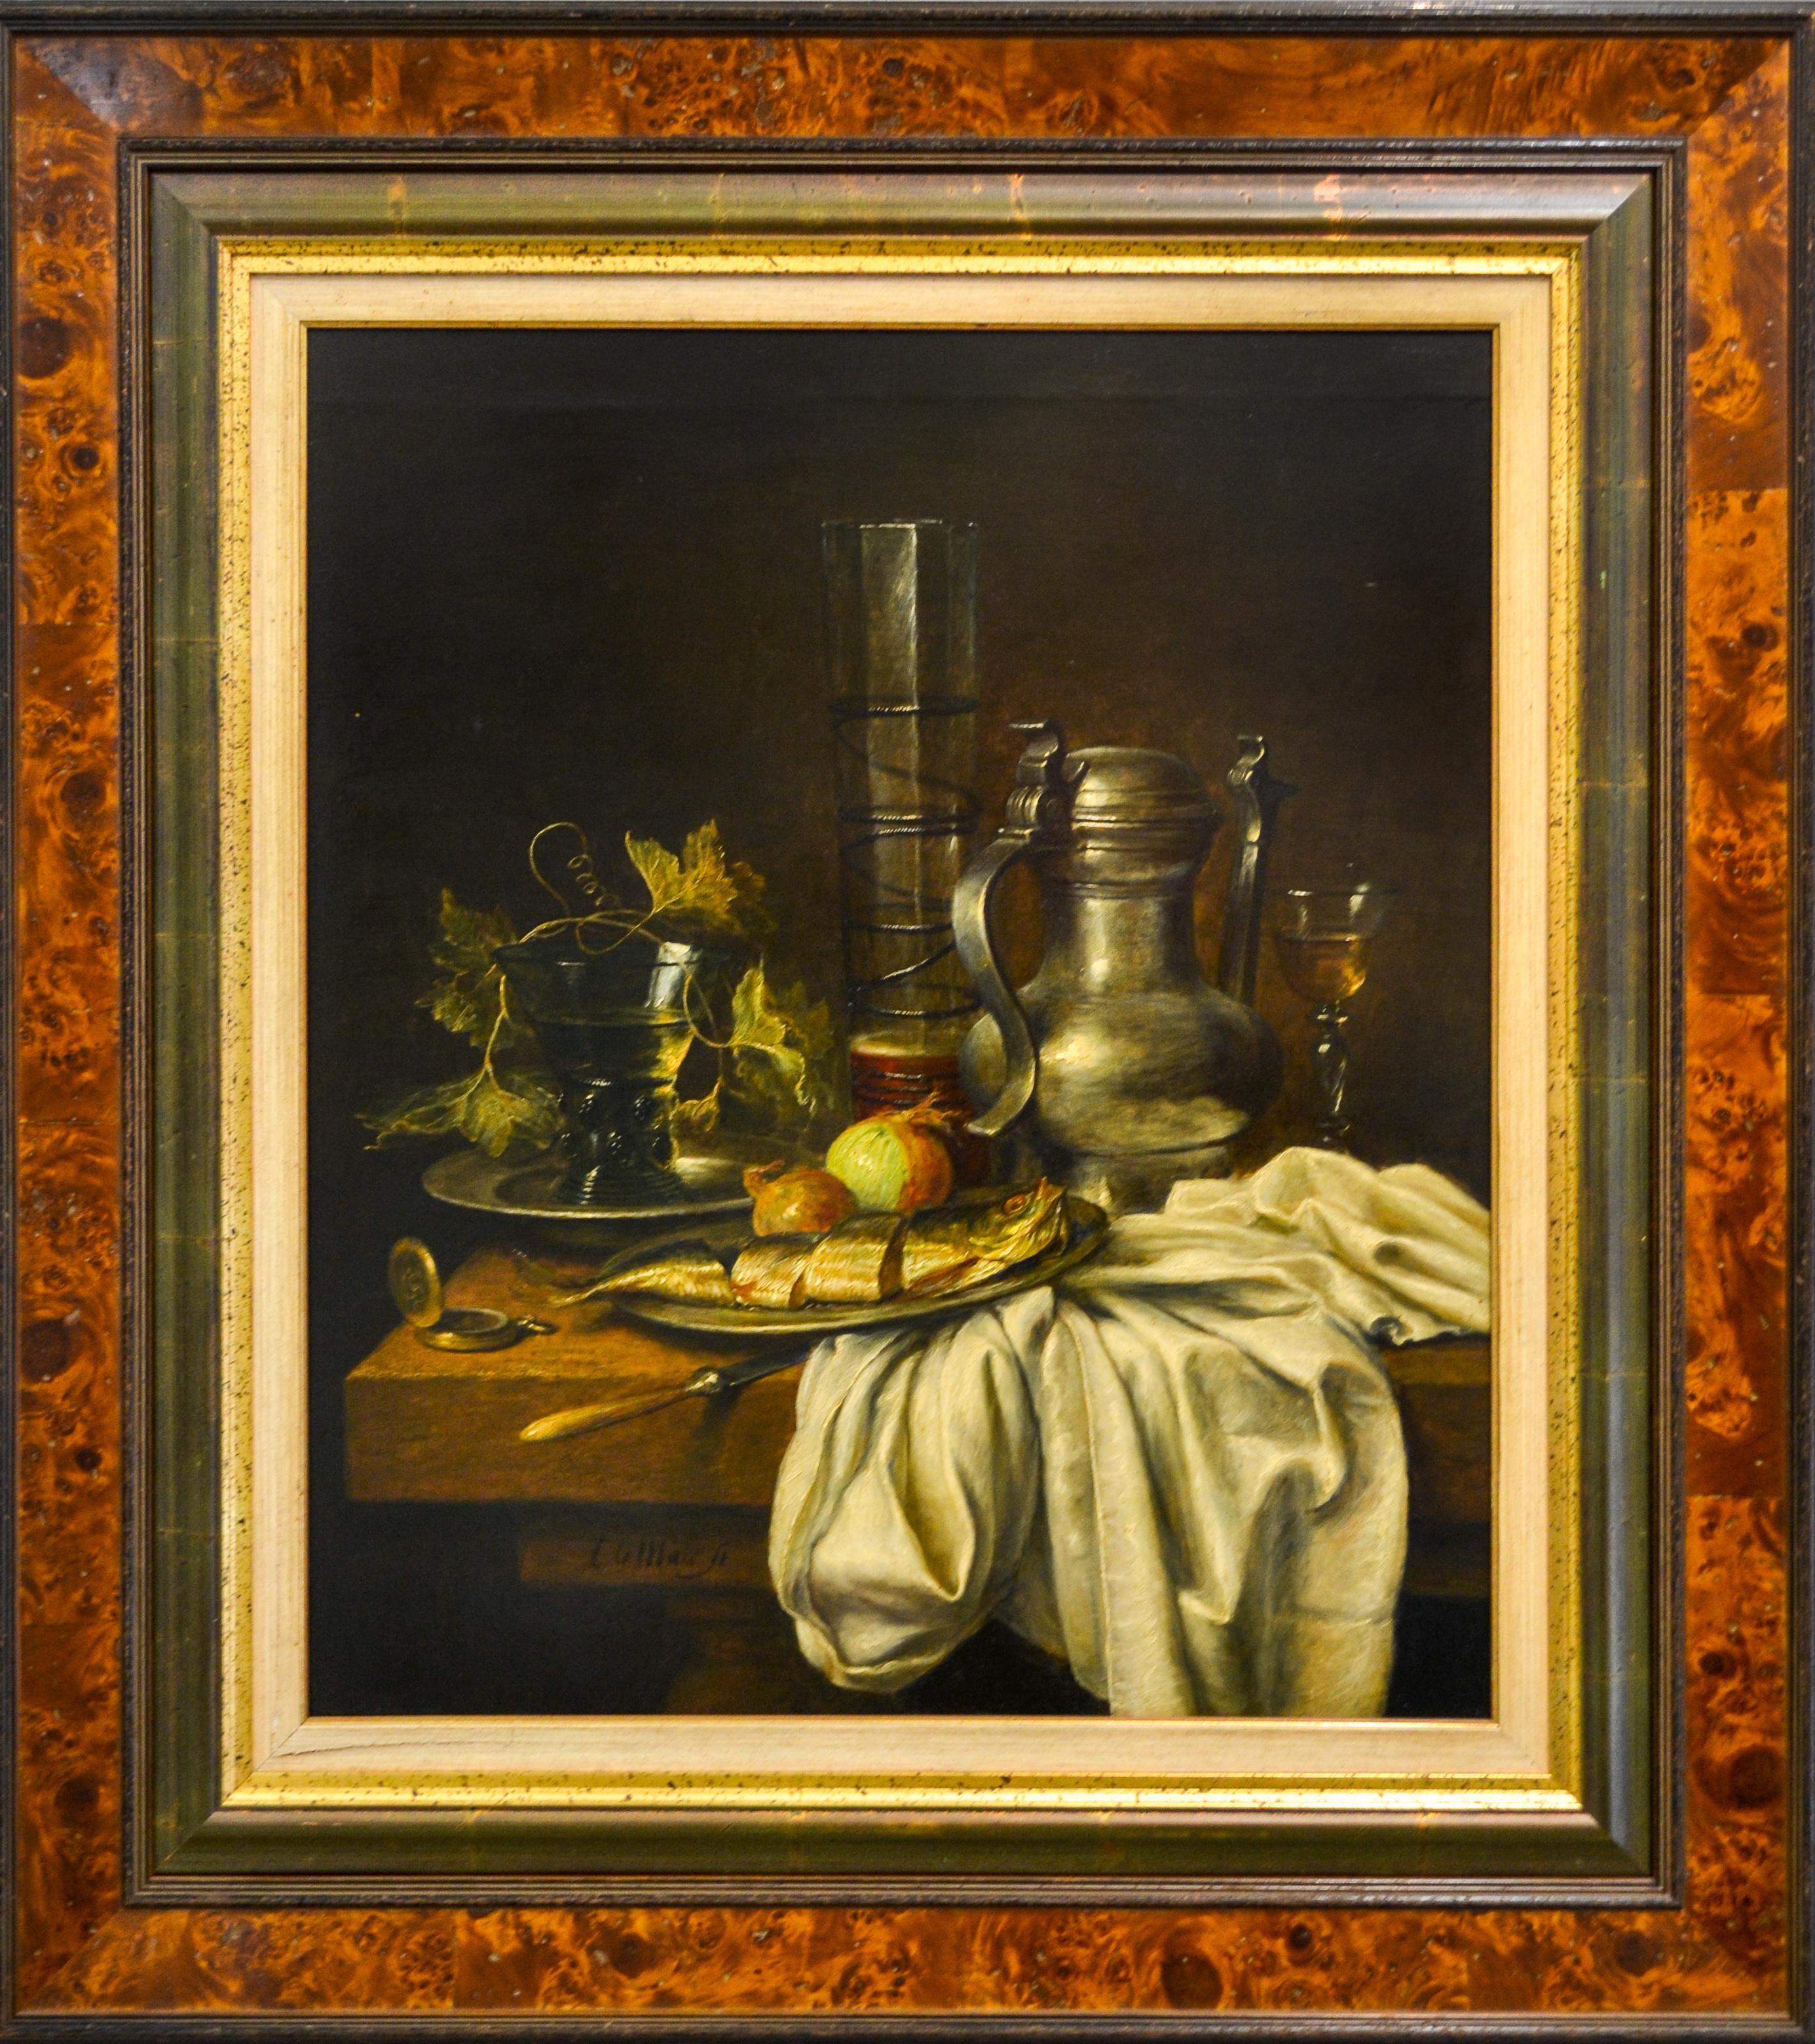 Canne et assiette en étain avec poisson, oignon et un verre de bière - Nature morte hollandaise classique  - Painting de Cornelis Le Mair